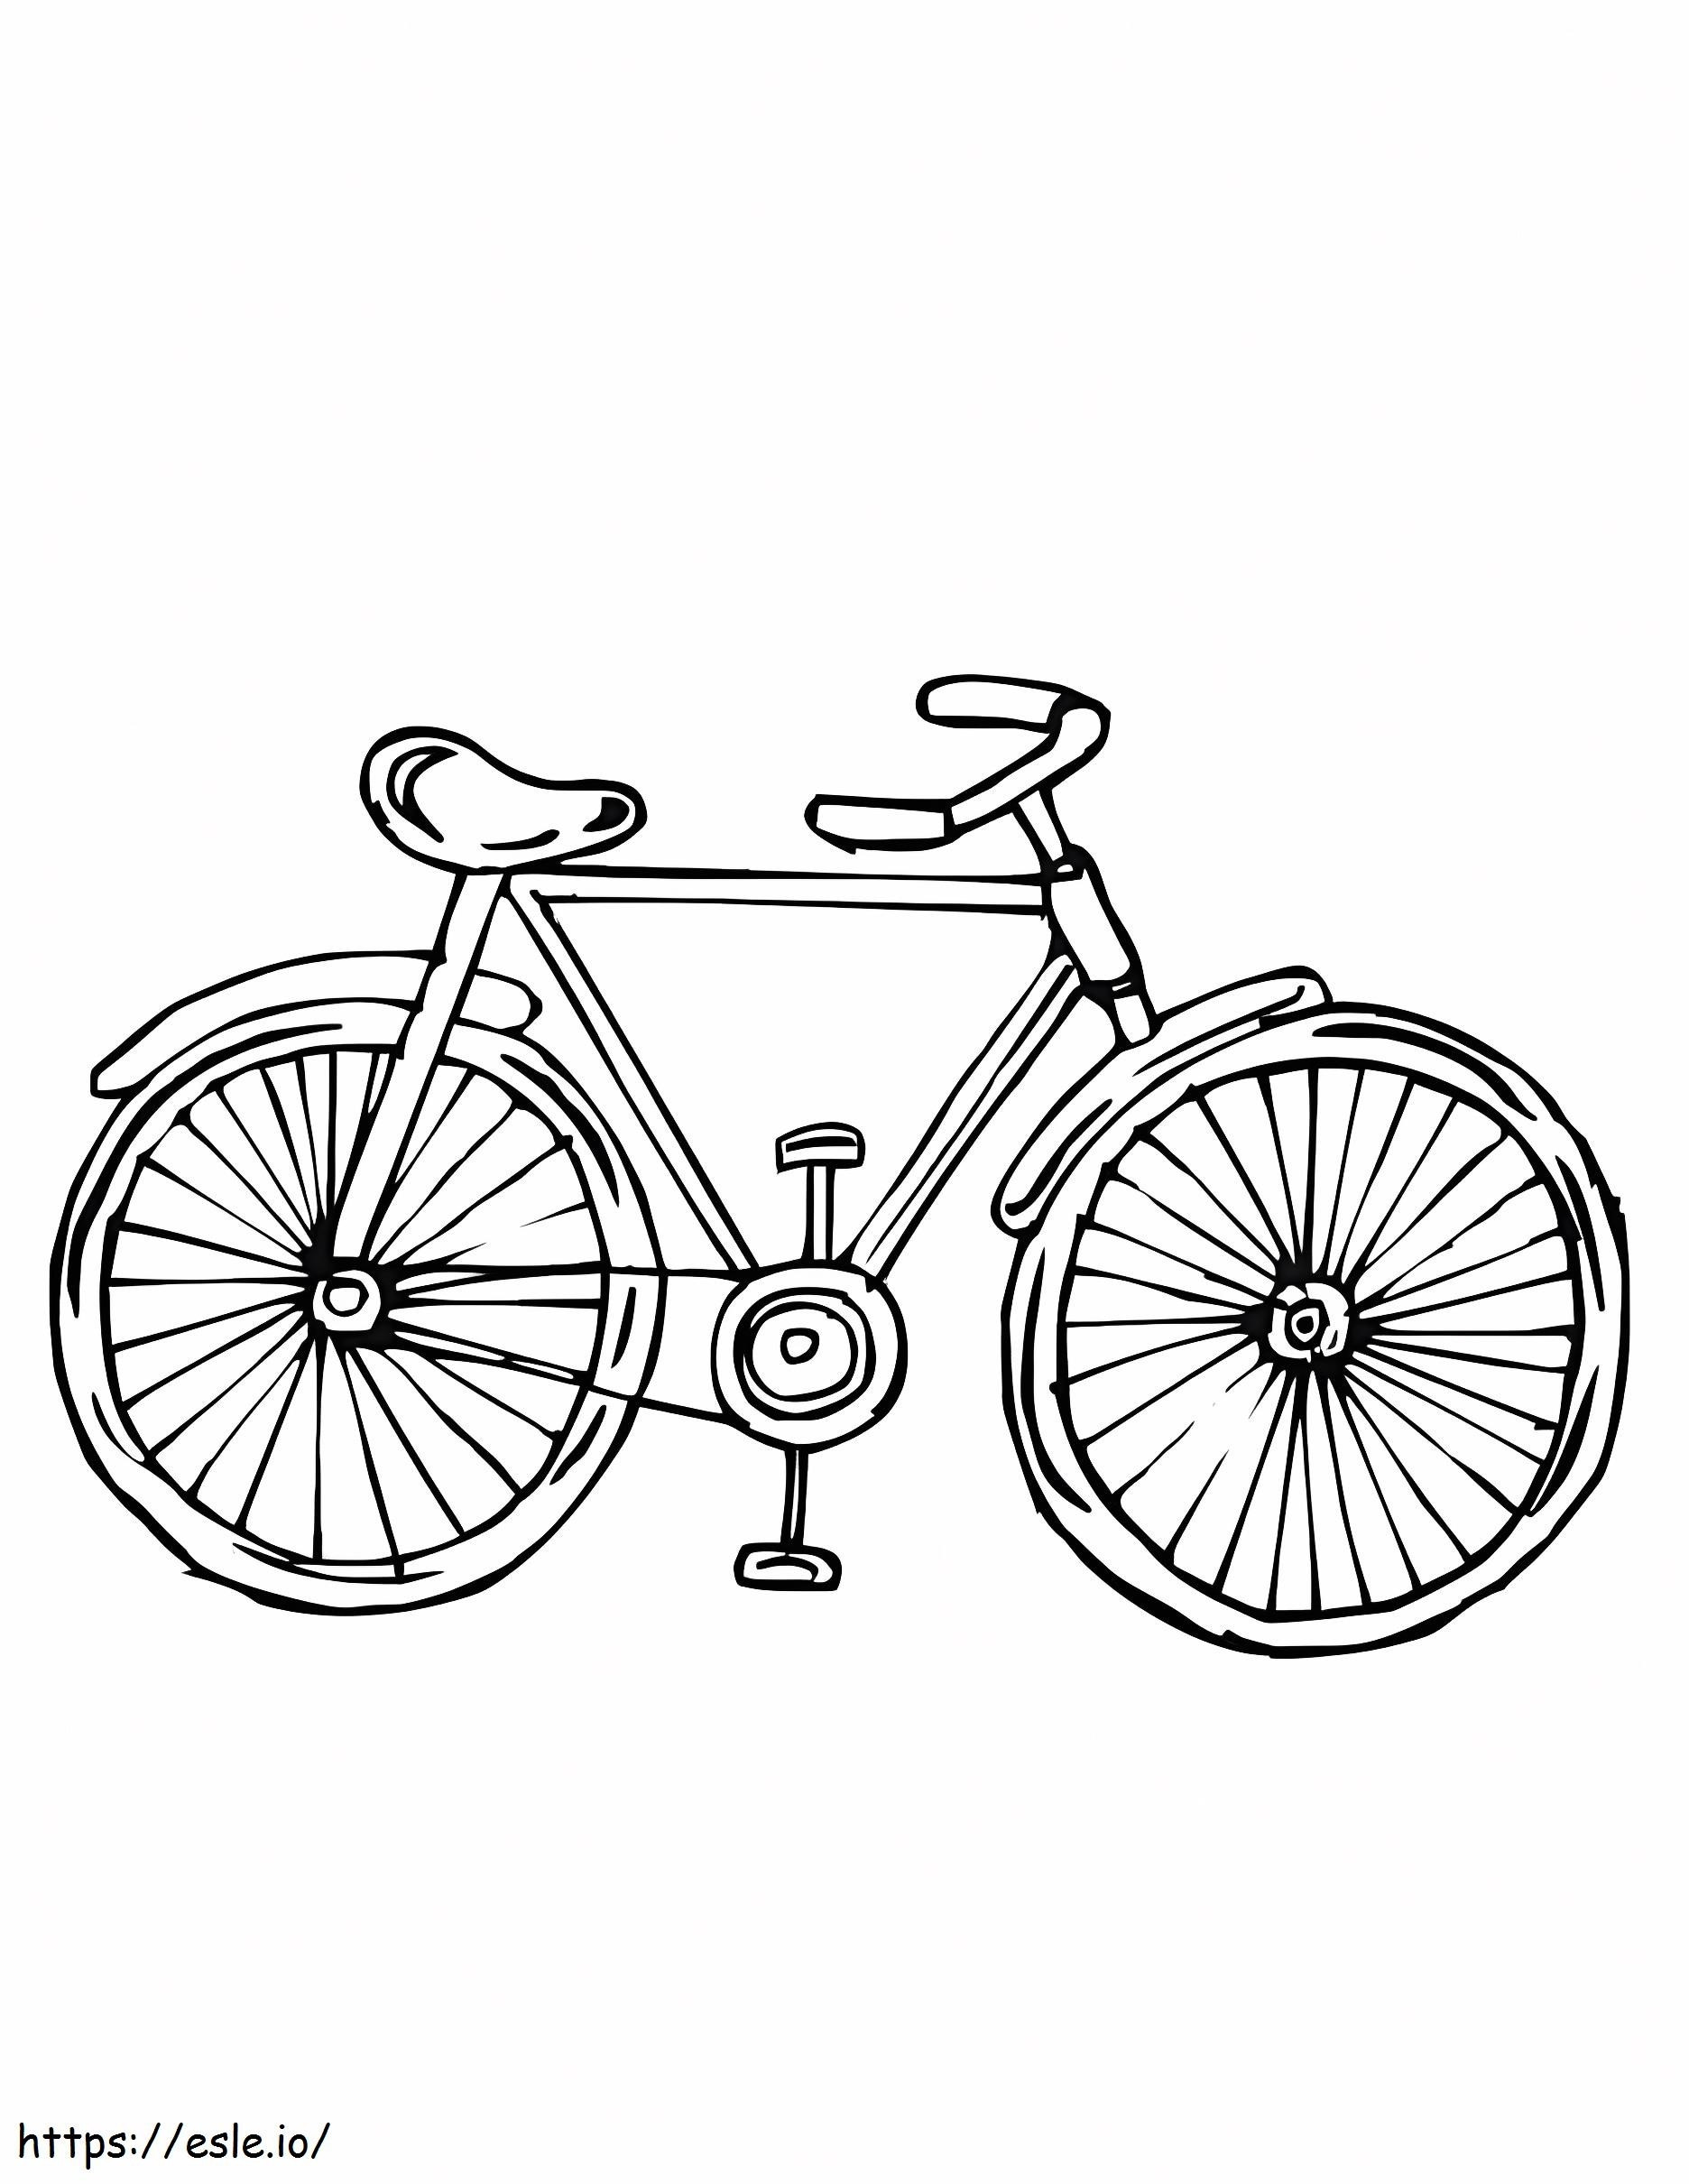 Label de onderdelen van een fiets kleurplaat kleurplaat